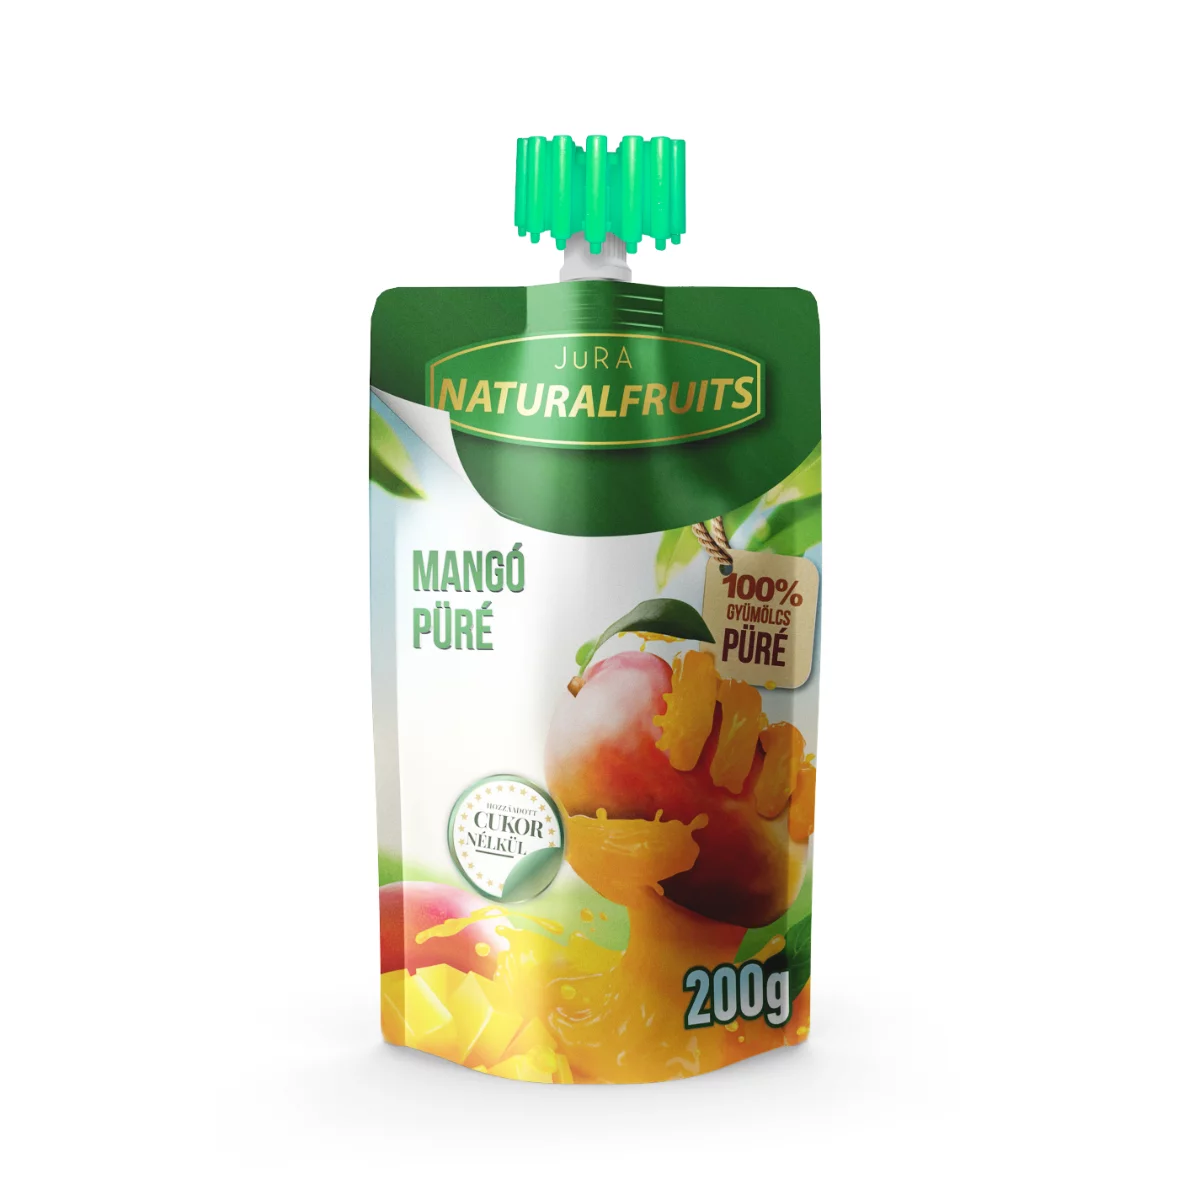 Jura gyümölcspüré 200g Mangó 100% cukormentes